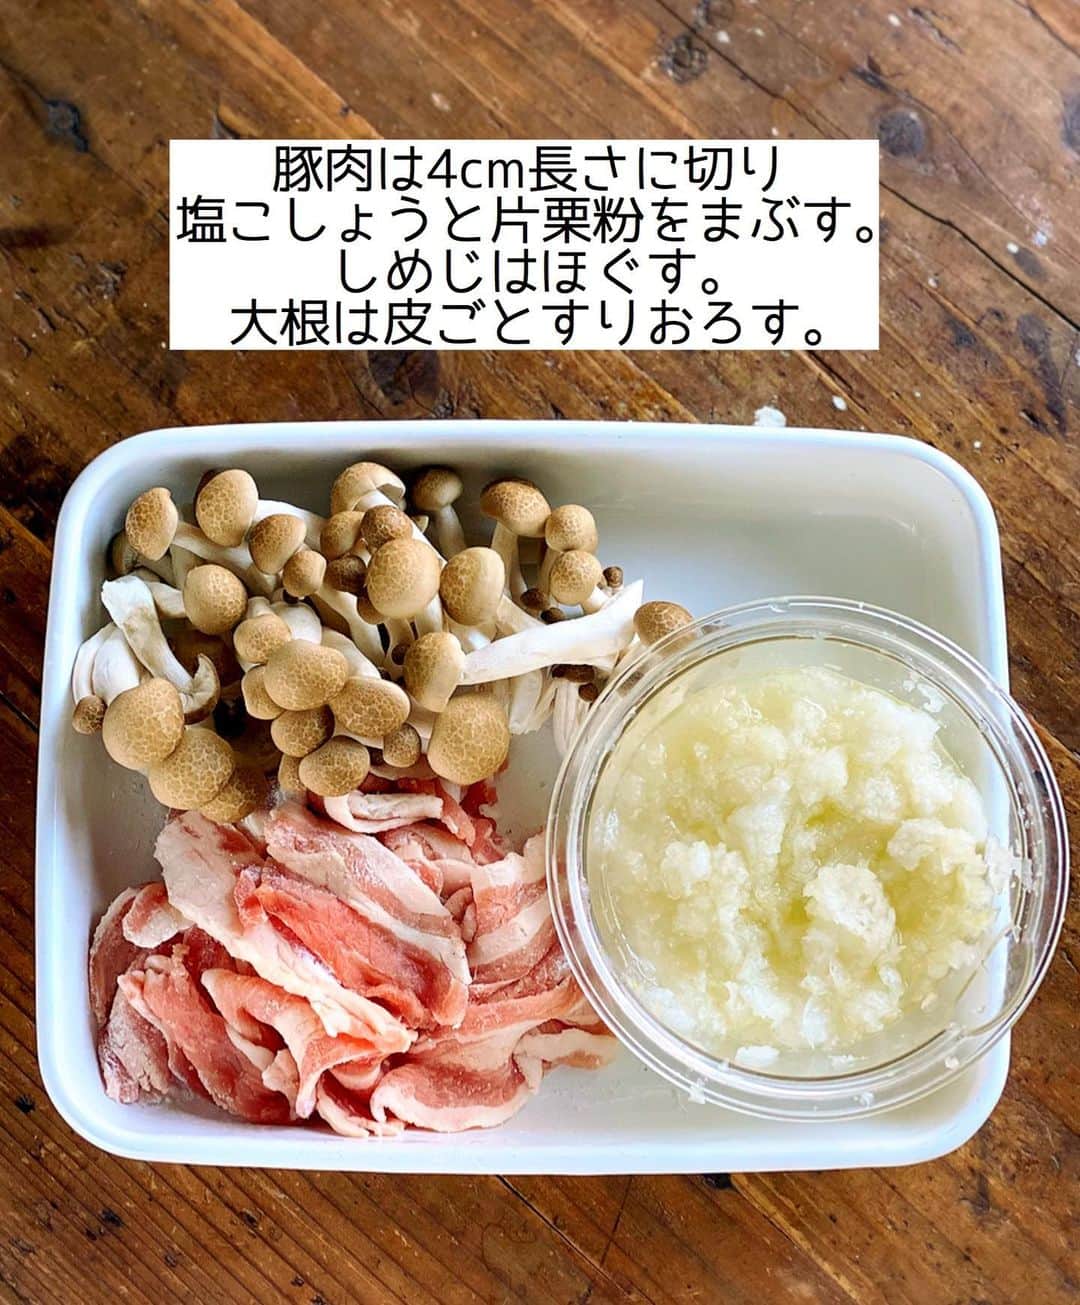 Mizuki【料理ブロガー・簡単レシピ】さんのインスタグラム写真 - (Mizuki【料理ブロガー・簡単レシピ】Instagram)「・﻿ 【#レシピ 】ーーーーーーーー﻿ ♡豚肉ときのこのおろし煮♡﻿ ーーーーーーーーーーーーーー﻿ ﻿ ﻿ ﻿ おはようございます(*^^*)﻿ ﻿ 今日ご紹介させていただくのは﻿ \ 豚肉ときのこのおろし煮 /﻿ ﻿ 食べ応えがあるのに﻿ あっさりヘルシー(*´艸`)﻿ 大根おろしは汁ごと加えて﻿ 余すことなくいただきますよ〜♩﻿ 豚肉にまぶした片栗粉効果で﻿ 煮汁がとろっとろに仕上がります♡﻿ ﻿ あっという間にできるので﻿ よかったらお試し下さいね(*´艸`)﻿ ﻿ ﻿ ﻿ ＿＿＿＿＿＿＿＿＿＿＿＿＿＿＿＿＿＿＿＿﻿ 【2人分】﻿ 豚バラ薄切り肉...150g﻿ 塩こしょう...少々﻿ 片栗粉...大1﻿ しめじ...1袋﻿ 大根...1/4本(200g)﻿ ごま油...小1﻿ ●水...100ml﻿ ●醤油・みりん...各大1.5﻿ ●生姜チューブ...3cm﻿ 万能ねぎ...適量﻿ ﻿ 1.豚肉は4cm長さに切り、塩こしょうと片栗粉をまぶす。しめじはほぐす。大根は皮ごとすりおろす。﻿ 2.フライパンにごま油を中火で熱し、豚肉としめじを炒める。火が通ったら大根おろしと●を加え、混ぜながら3分程煮る。﻿ 3.器に盛り、小口切りにしたねぎをのせる。﻿ ￣￣￣￣￣￣￣￣￣￣￣￣￣￣￣￣￣￣￣￣﻿ ﻿ ﻿ ﻿ ﻿ 《ポイント》﻿ ♦︎豚こまで作っても◎﻿ ♦︎大根は皮ごと使用しましたが、気になる方は剥いていただいても♩﻿ ﻿ ﻿ ﻿ ﻿ ﻿ ﻿ ﻿ ﻿ 📕新刊発売中📕﻿ 【ラクしておいしい！#1品晩ごはん 】﻿ ￣￣￣￣￣￣￣￣￣￣￣￣￣￣￣￣￣﻿ 私たちだってヘトヘトな日がある•••﻿ 毎日何品も作っていられない•••﻿ もうごはんに悩みたくない😢﻿ そんな時、1品ごはんはいかがでしょう？﻿ というご提案です✨﻿ ﻿ 【1品ごはん】は﻿ 副菜いらずで全てがシンプル！﻿ ￣￣￣￣￣￣￣￣￣￣￣￣￣￣￣￣￣￣﻿ 一品つくるだけでいいから﻿ 献立を考えなくてよし！﻿ ￣￣￣￣￣￣￣￣￣￣￣￣￣￣￣￣￣￣﻿ 悩まない、疲れない、﻿ 気力や時間がなくてもなんとかなる！﻿ ￣￣￣￣￣￣￣￣￣￣￣￣￣￣￣￣￣￣﻿ そんな頼りになる﻿ 便利なお助けごはんです☺️💕﻿ (ハイライトに🔗貼っています✨)﻿ ￣￣￣￣￣￣￣￣￣￣￣￣￣￣￣￣￣﻿ ﻿ ﻿ ﻿ ﻿ ﻿ ⭐️発売中⭐️﻿ ＿＿＿＿＿＿＿＿＿＿＿＿＿＿＿＿＿＿﻿ しんどくない献立、考えました♩﻿ \15分でいただきます/﻿ 📕#Mizukiの2品献立 📕﻿ ﻿ 和食をもっとカジュアルに♩﻿ \毎日のごはんがラクになる/﻿ 📘#Mizukiの今どき和食 📘﻿ ﻿ ホケミレシピの決定版♩﻿ \はじめてでも失敗しない/﻿ 📙#ホットケーキミックスのお菓子 📙﻿ ﻿ NHKまる得マガジンテキスト☆﻿ ホットケーキミックスで﻿ 📗絶品おやつ&意外なランチ📗﻿ ￣￣￣￣￣￣￣￣￣￣￣￣￣￣￣￣￣￣﻿ ﻿ ﻿ ﻿ ＿＿＿＿＿＿＿＿＿＿＿＿＿＿＿＿＿＿﻿ レシピを作って下さった際や﻿ レシピ本についてのご投稿には﻿ タグ付け( @mizuki_31cafe )して﻿ お知らせいただけると嬉しいです😊💕﻿ ￣￣￣￣￣￣￣￣￣￣￣￣￣￣￣￣￣￣﻿ ﻿ ﻿ ﻿ ﻿ #豚肉#大根#大根おろし#おろし煮#みぞれ煮#Mizuki#簡単レシピ#時短レシピ#節約レシピ#料理#フーディーテーブル#マカロニメイト#おうちごはん#デリスタグラマー#料理好きな人と繋がりたい#おうちごはんlover#写真好きな人と繋がりたい#foodpic#cooking#recipe#lin_stagrammer#foodporn#yummy#f52grams#豚肉ときのこのおろし煮m」1月14日 8時34分 - mizuki_31cafe